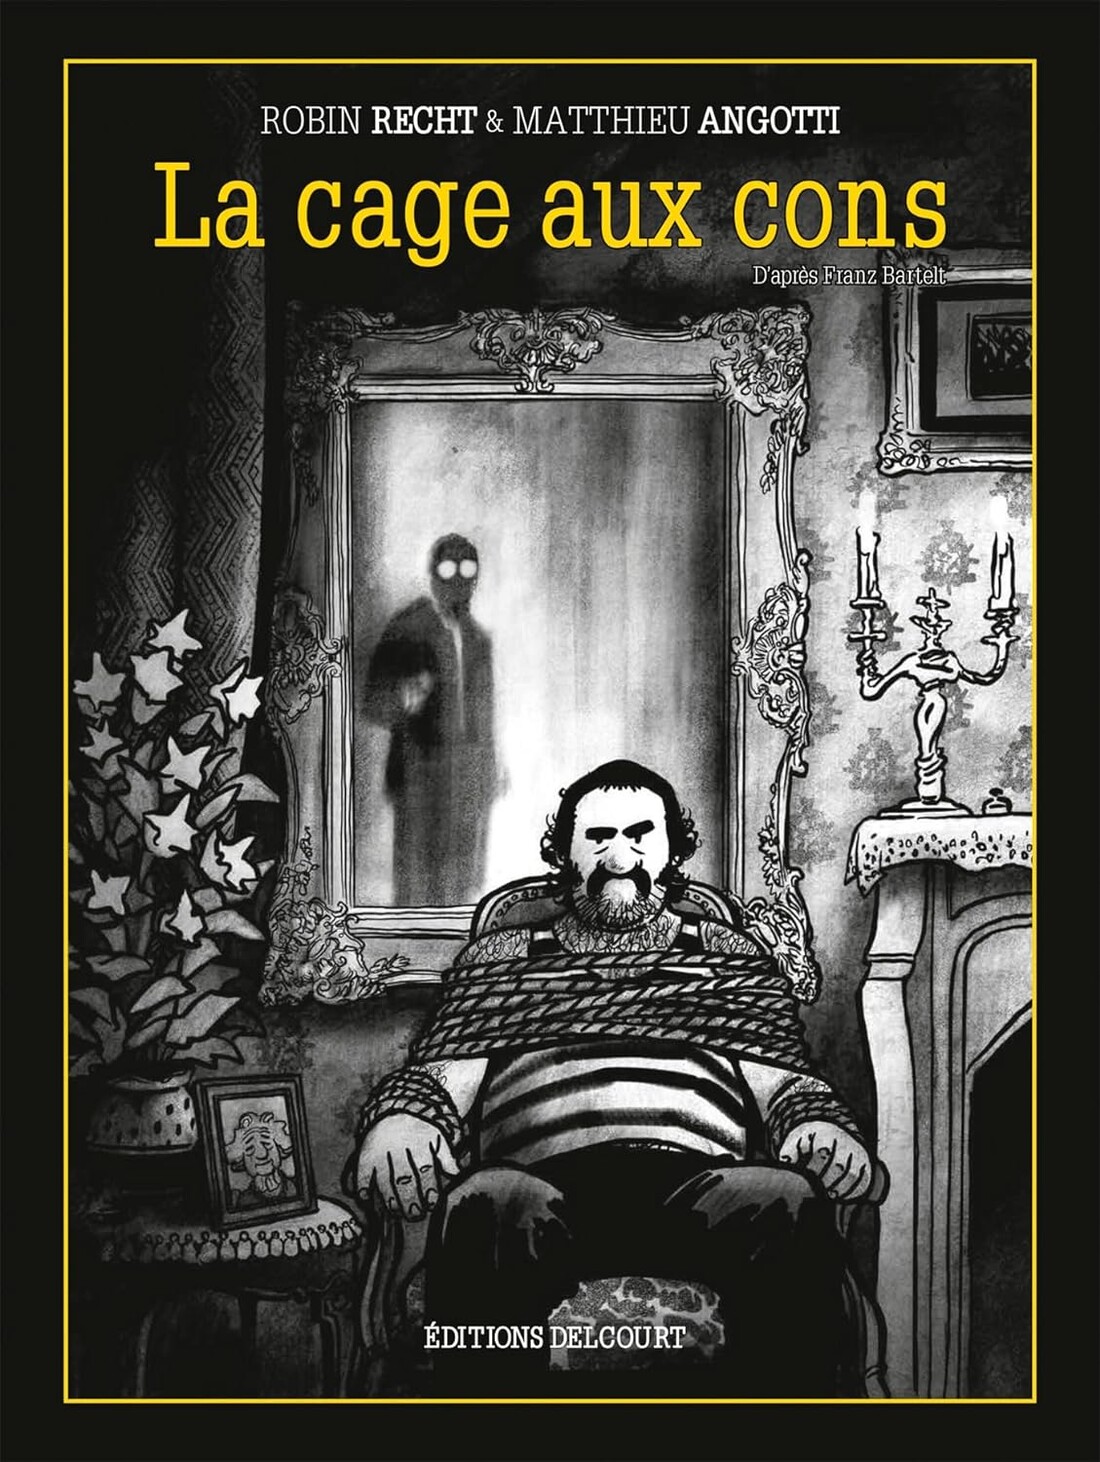 Clouzot 2021 : La Cage aux cons - Matthieu Angotti et Robin Recht